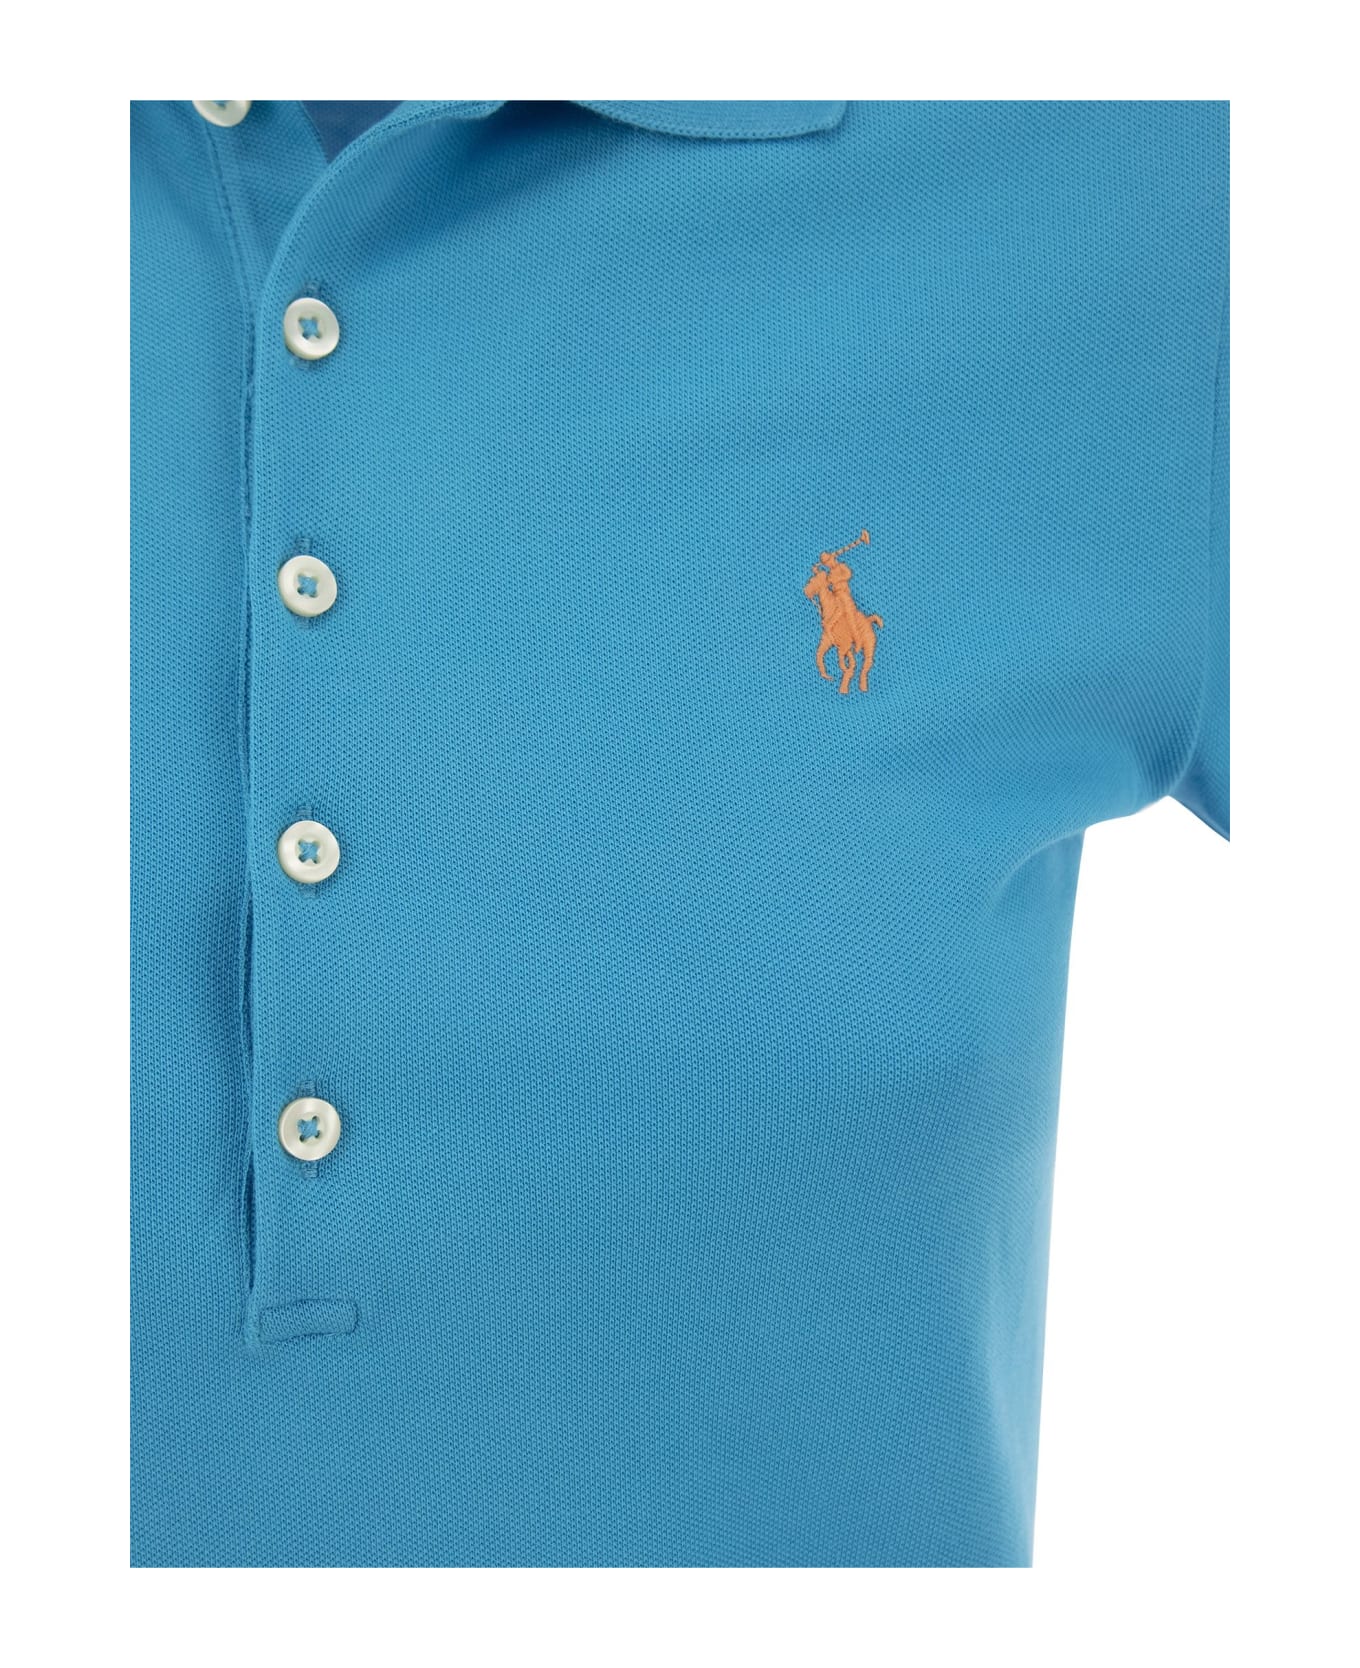 Polo Ralph Lauren Polo Shirt - Light Blue